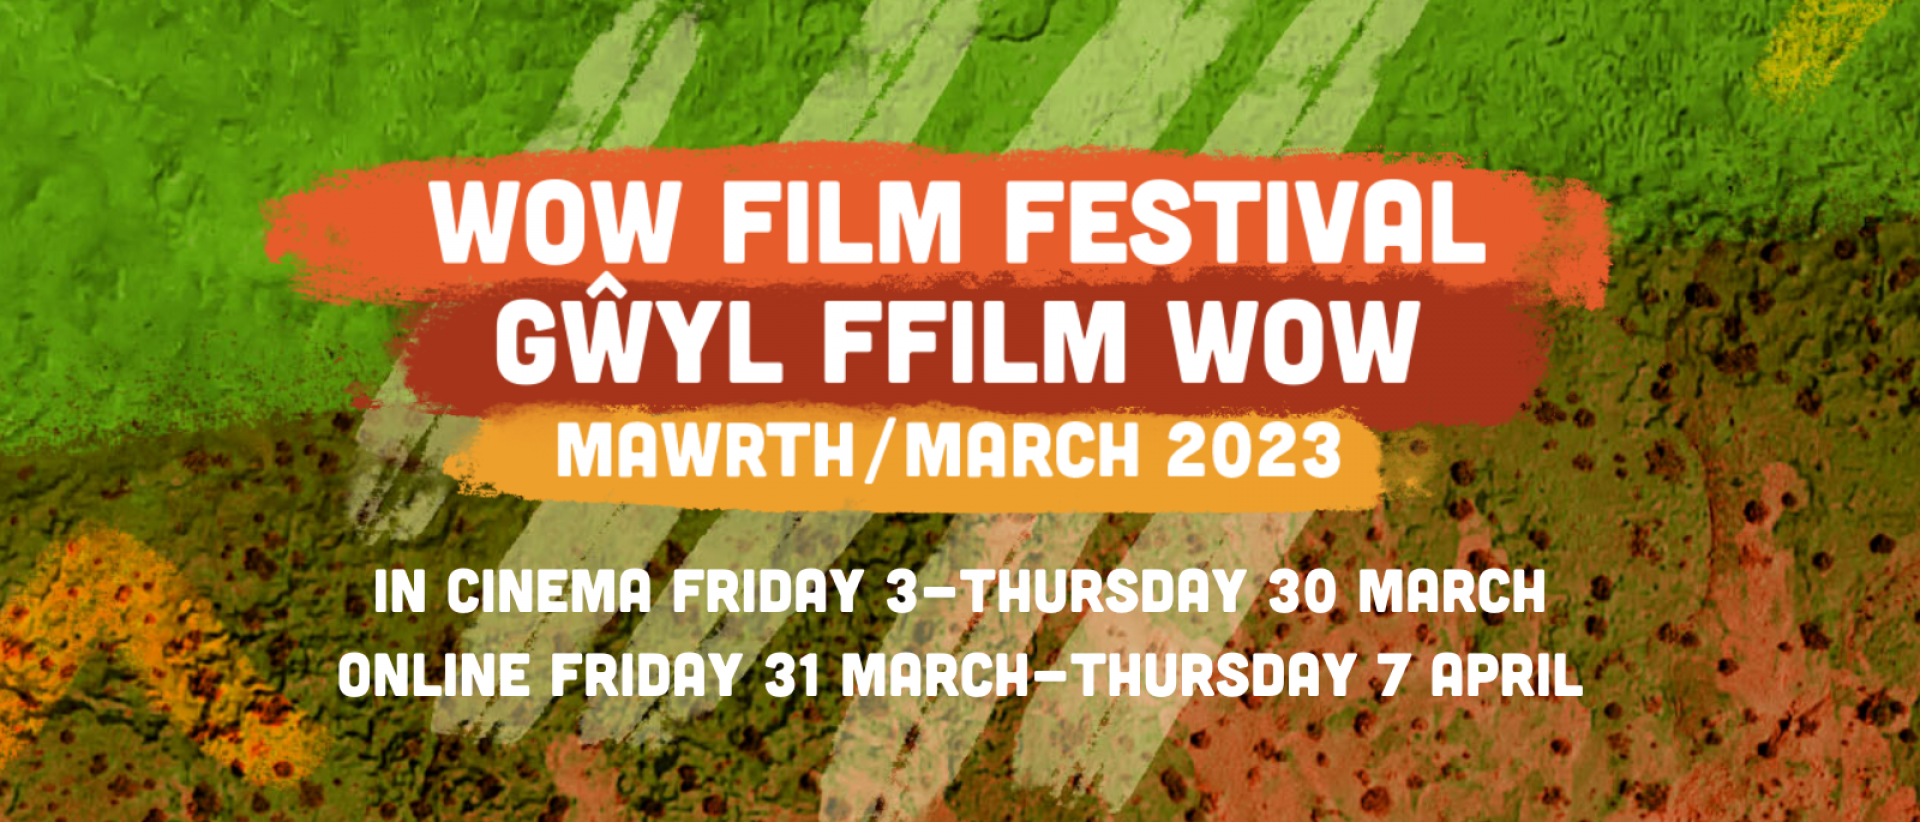 wow film festival. Gwyl ffilm wow. mawrth / march 2023.